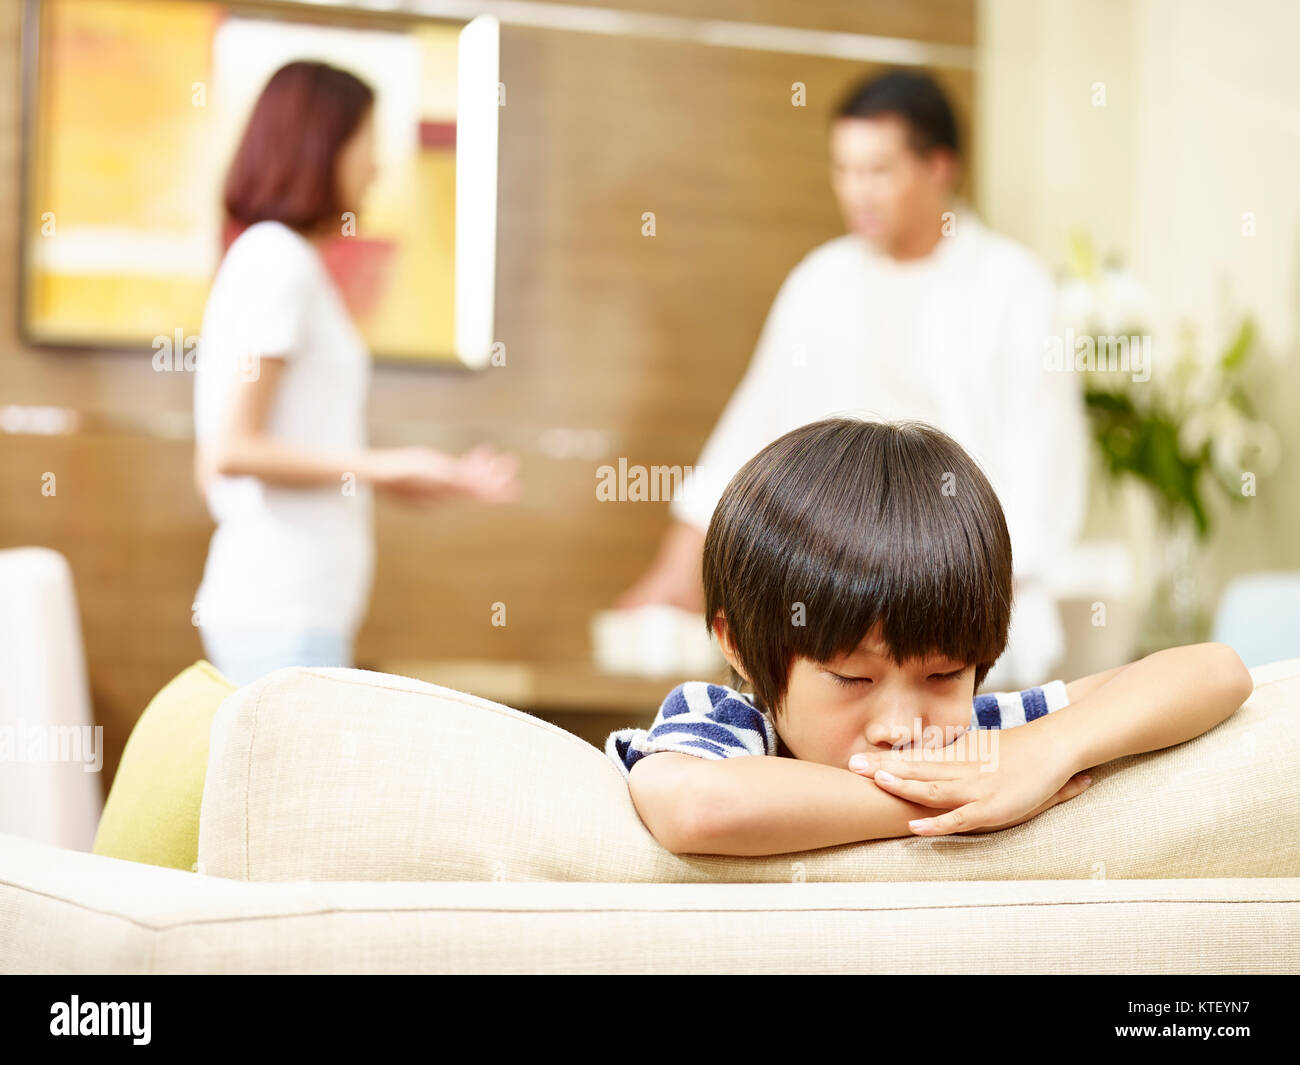 Asiatische Kind scheint traurig und unglücklich, während sich die Eltern streiten im Hintergrund. Stockfoto